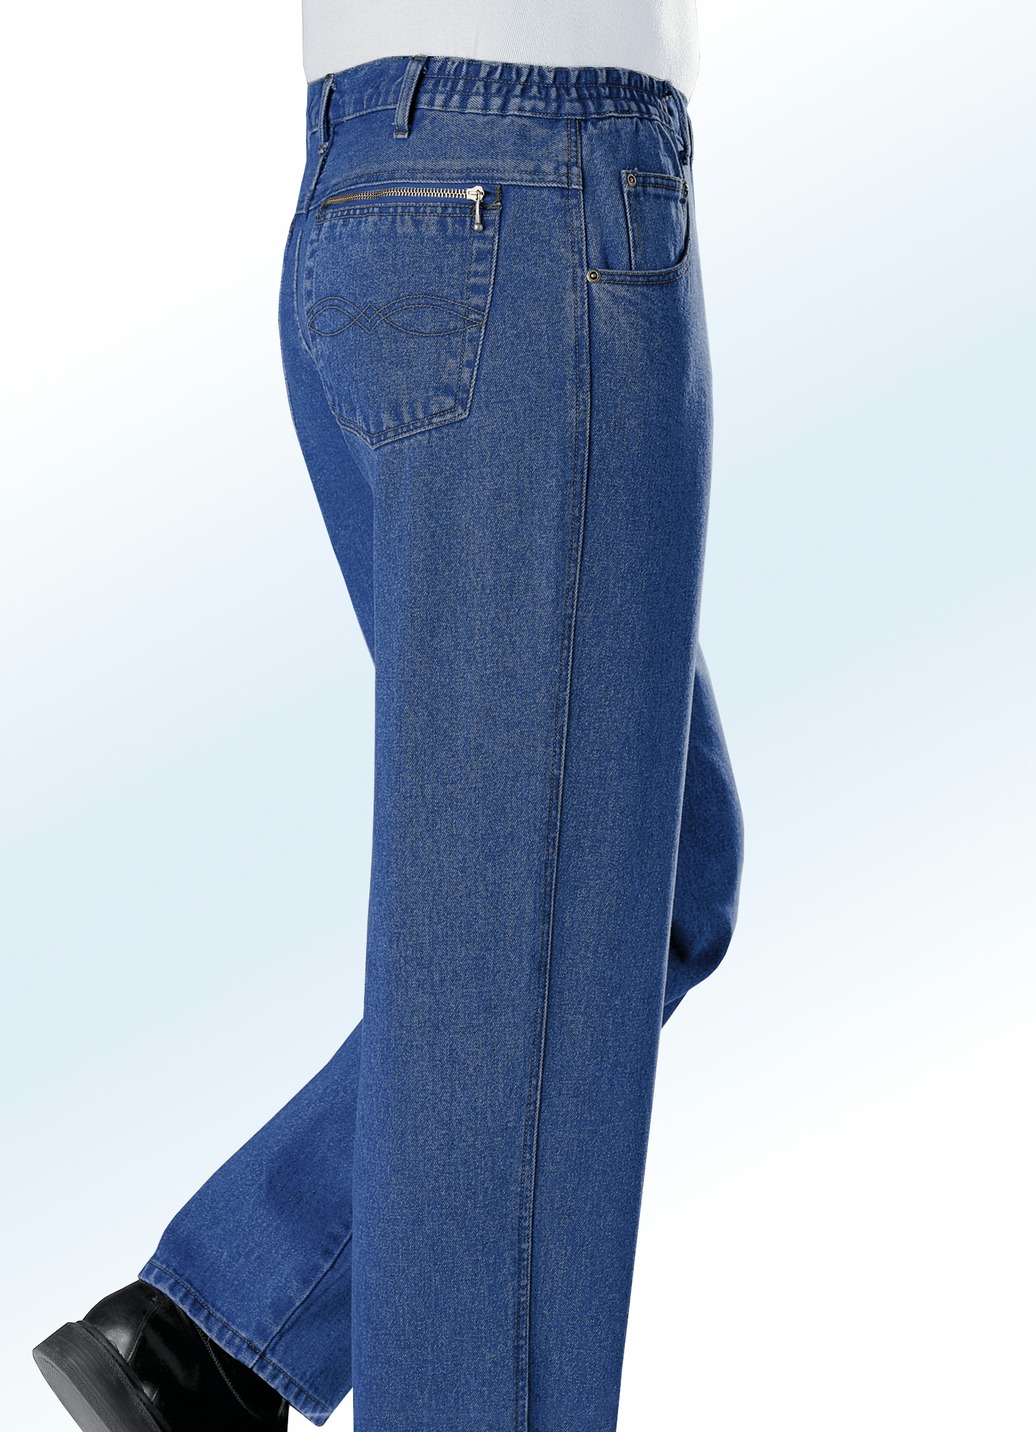 Jeans mit Dehnbundeinsätzen in 3 Farben, Jeansblau, Größe 27 von BADER